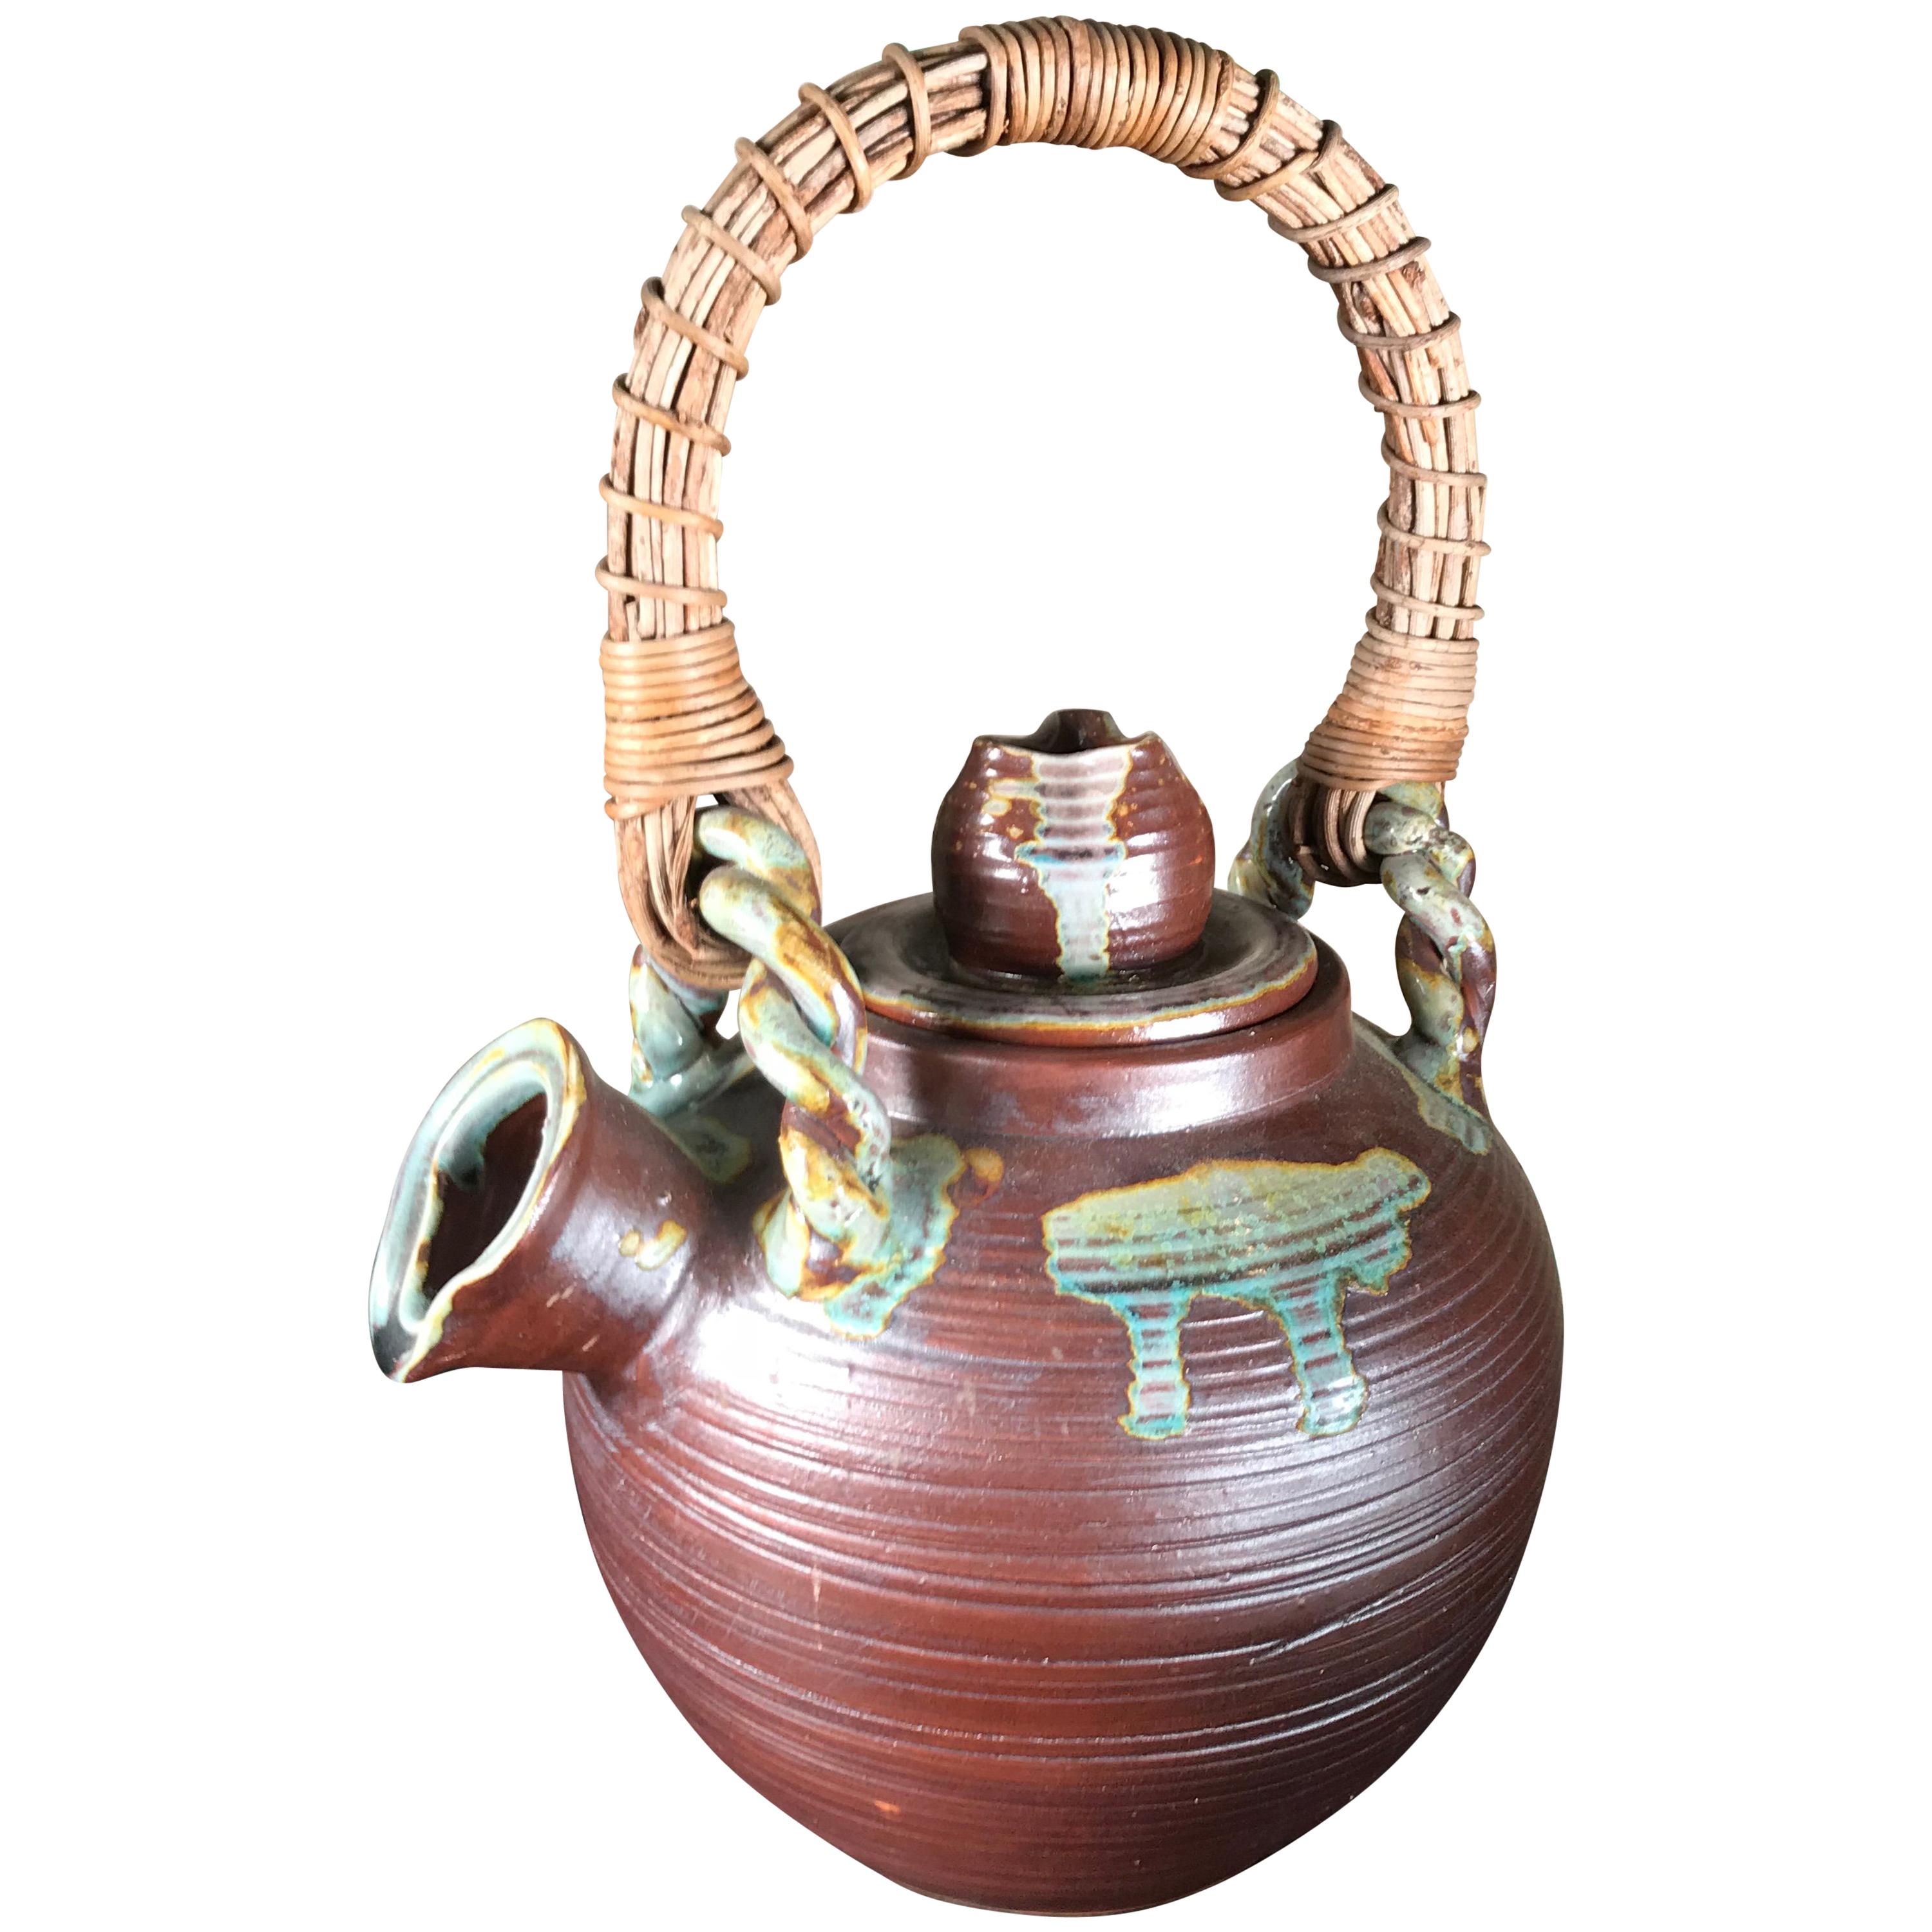 Japan Big Older Flower Pot Tea Vessel, Finely Crafted with Colorful Glaze